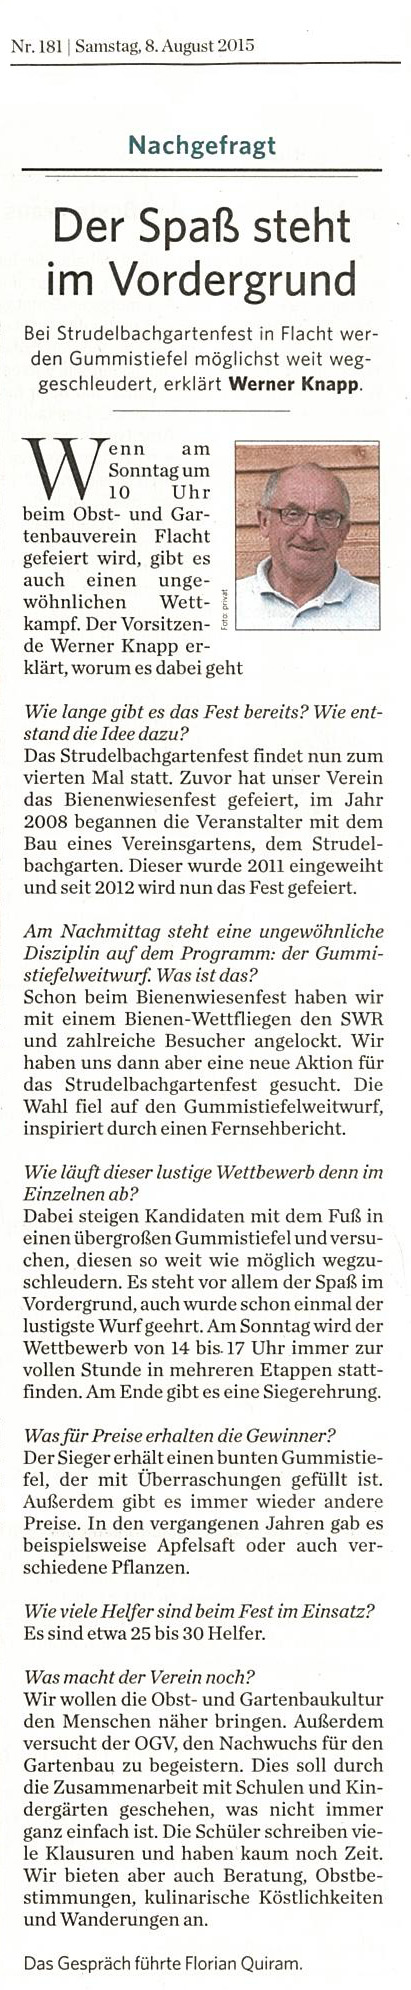 Bericht aus Leonberger Kreiszeitung 08.08.2015